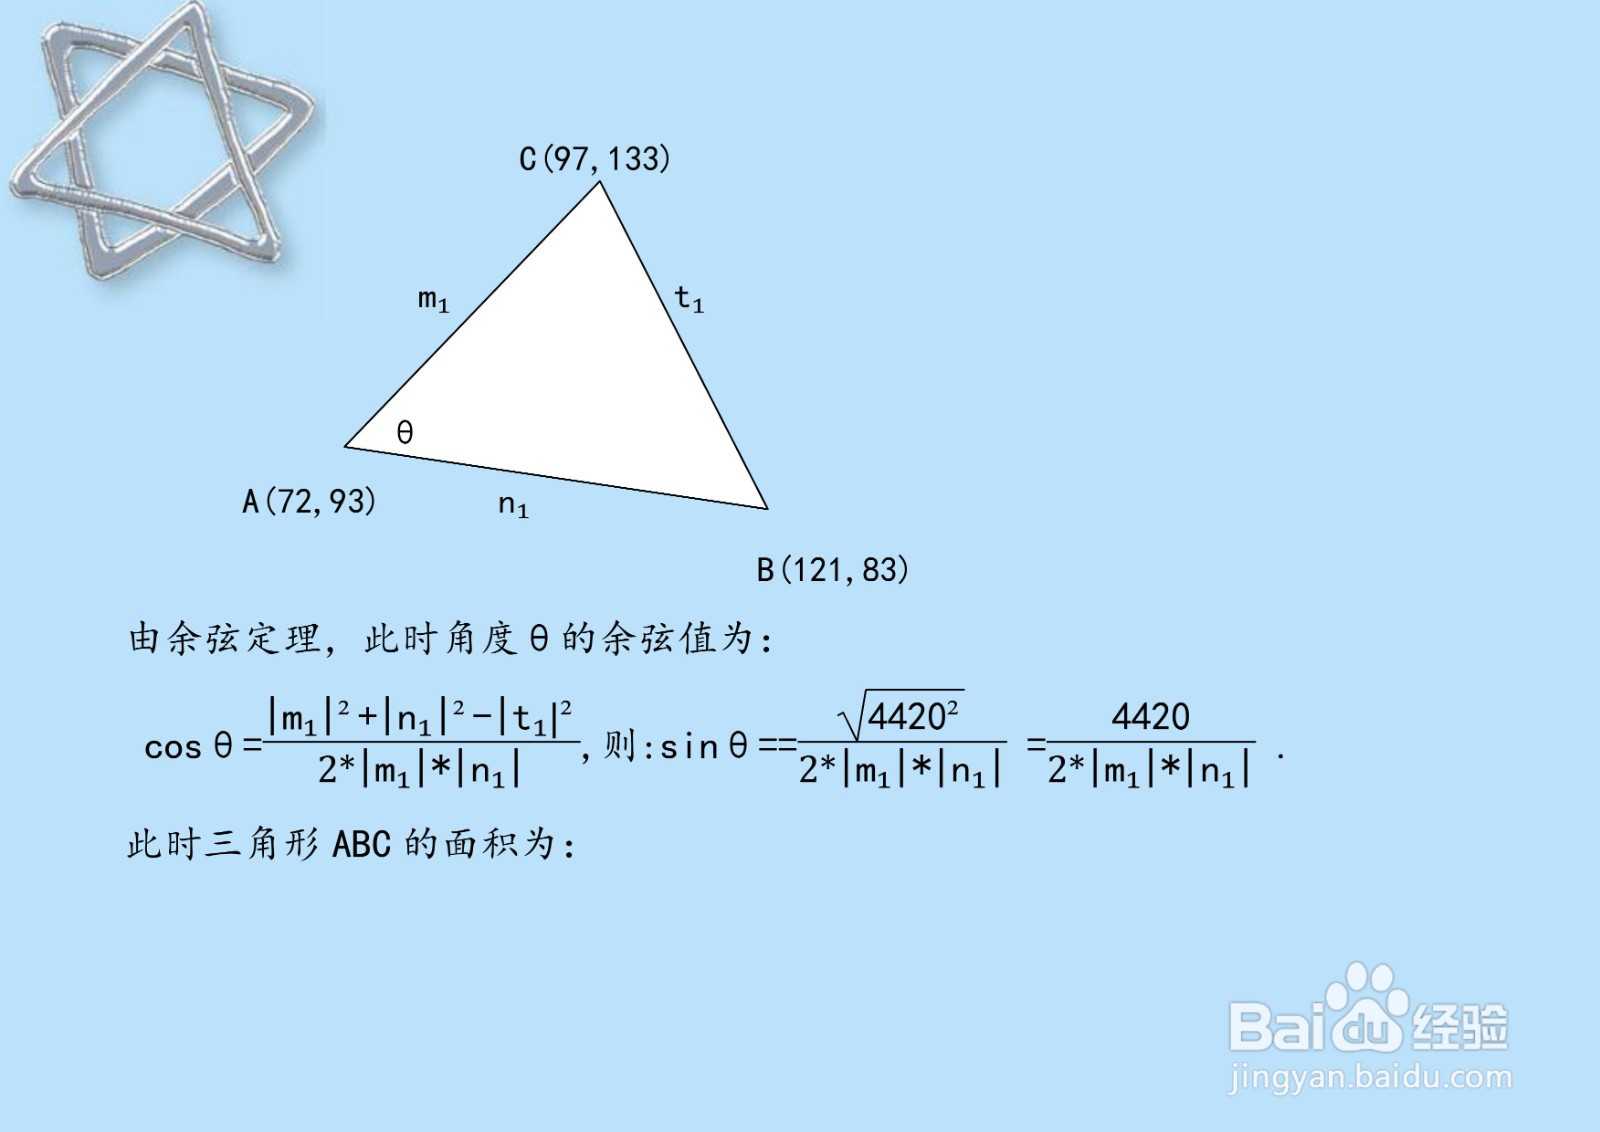 求经过三点A,B,C三角形的面积的多种计算方法A5